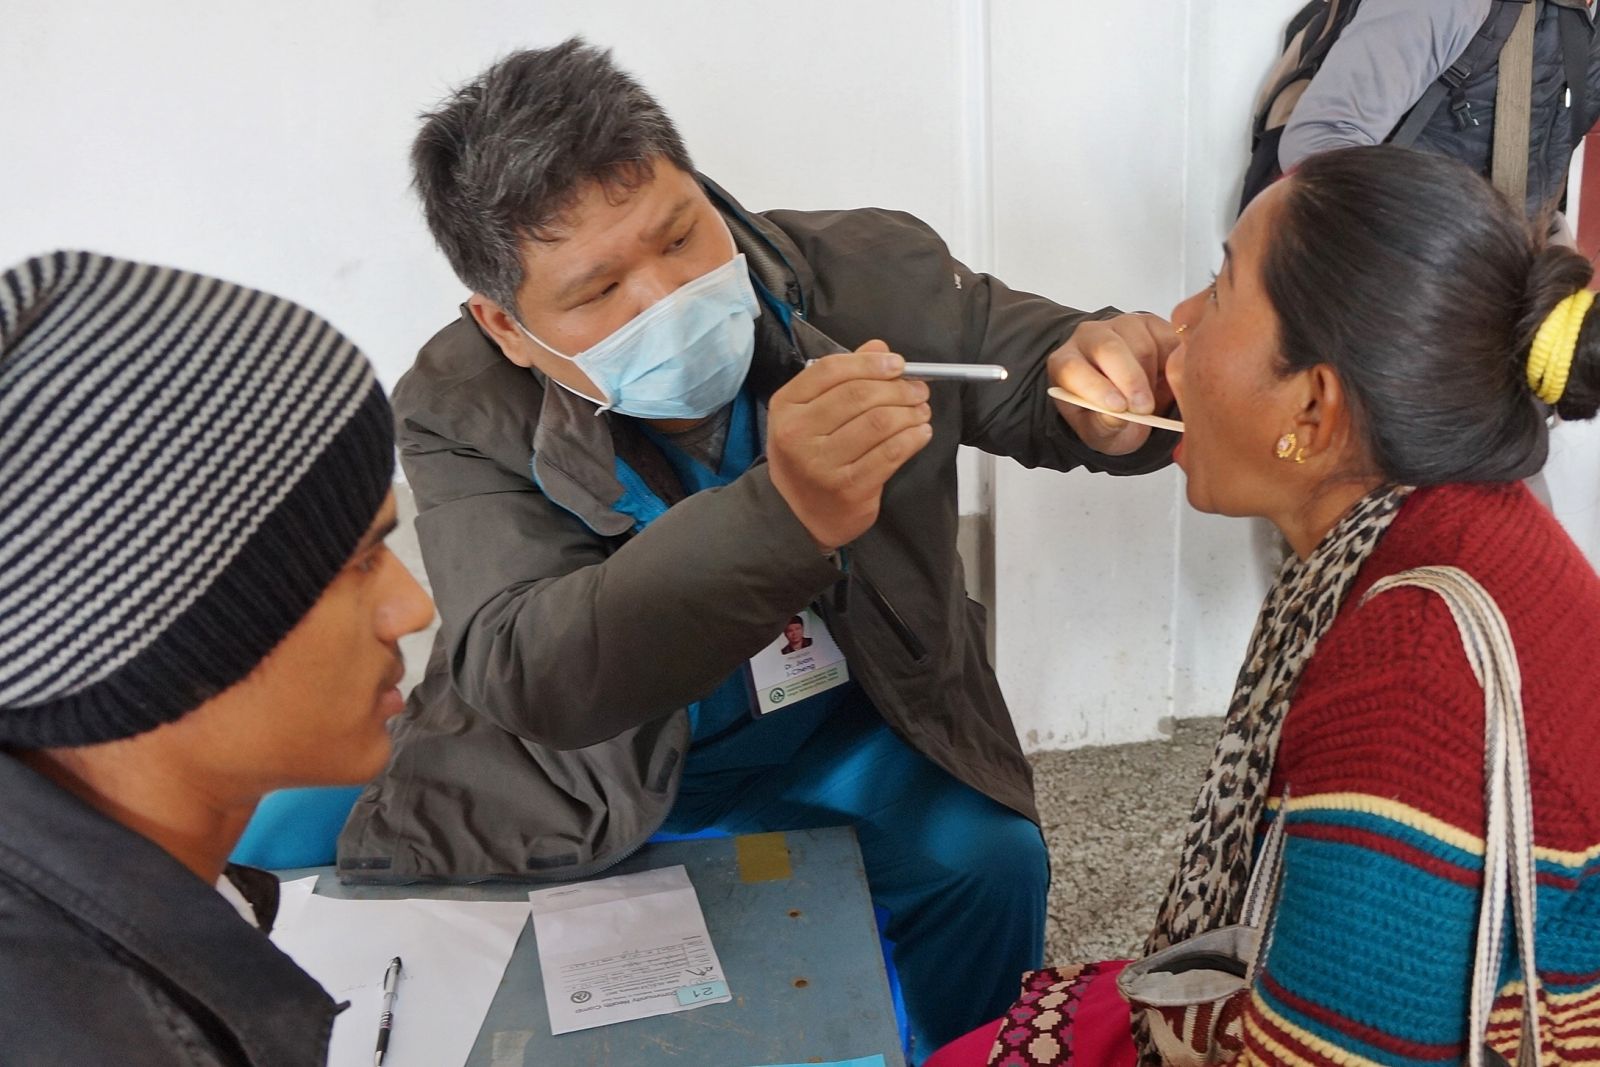 彰基前往尼泊爾山區醫療服務 協助提升衛生站功能 | 文章內置圖片